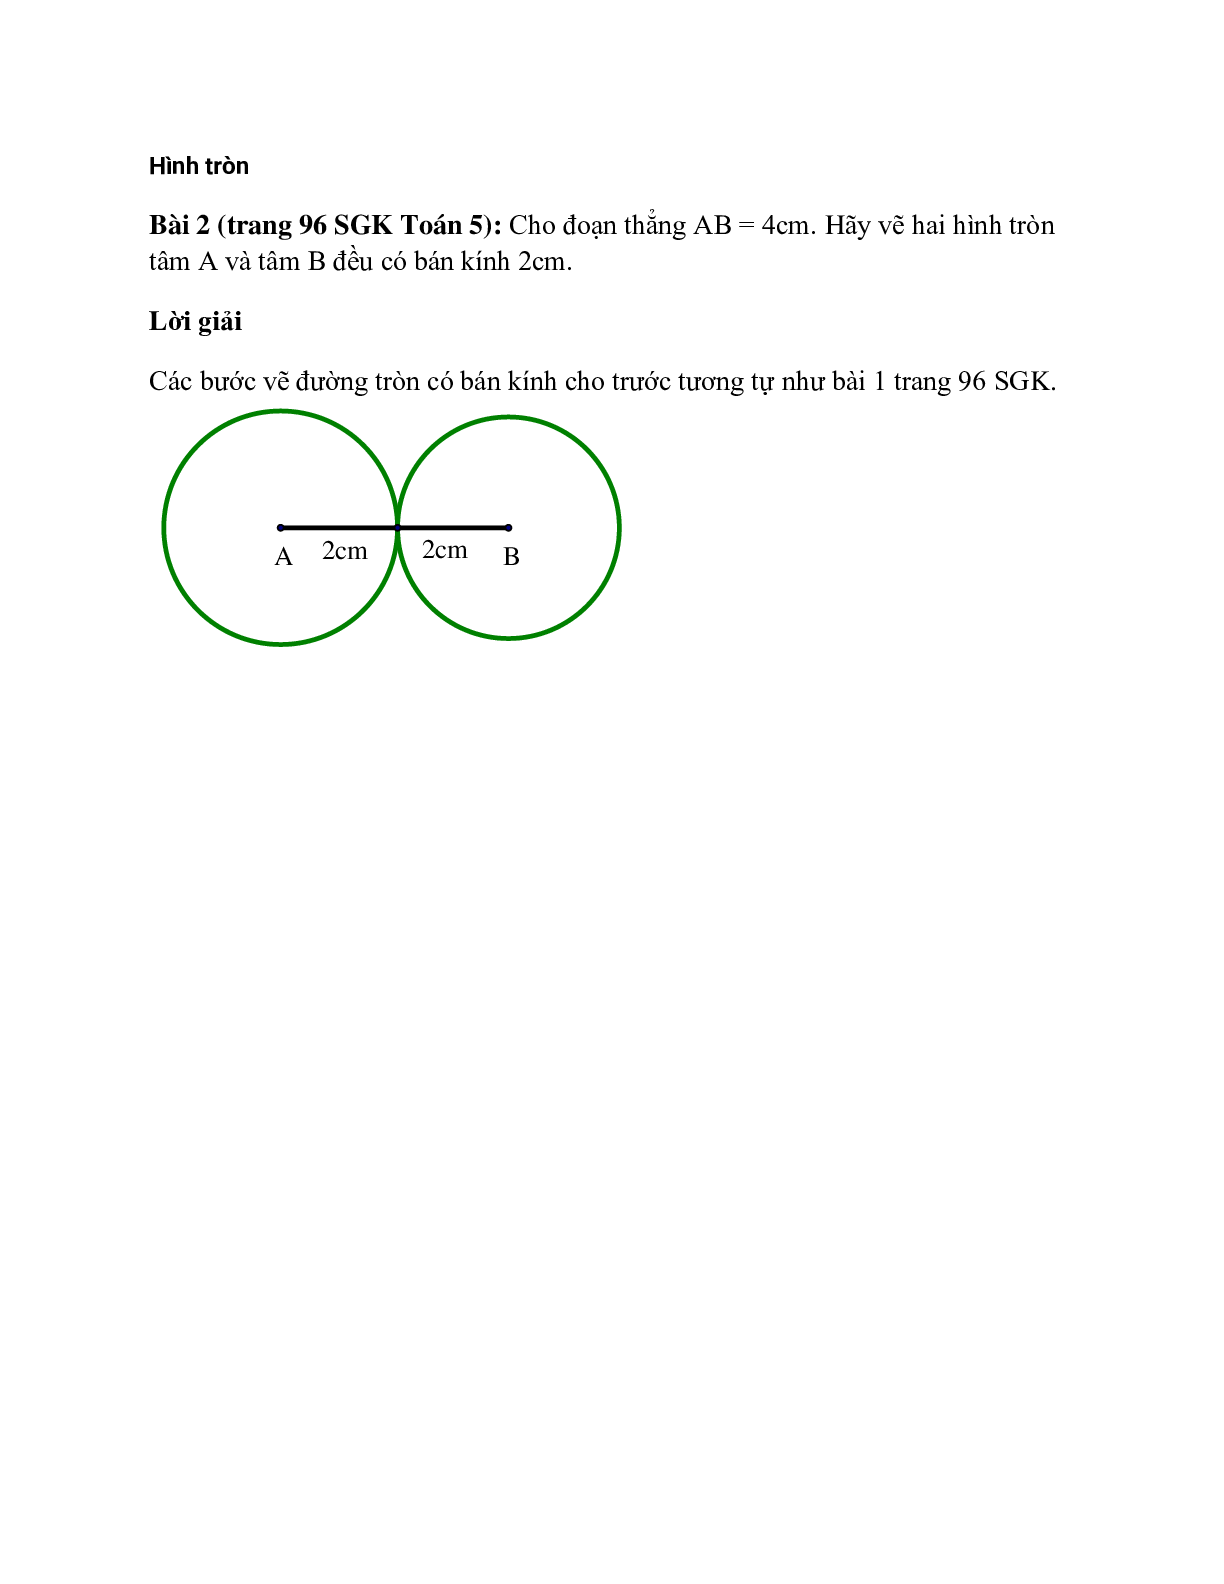 Cho đoạn thẳng AB = 4cm. Hãy vẽ hai hình tròn tâm A và tâm B đều ...